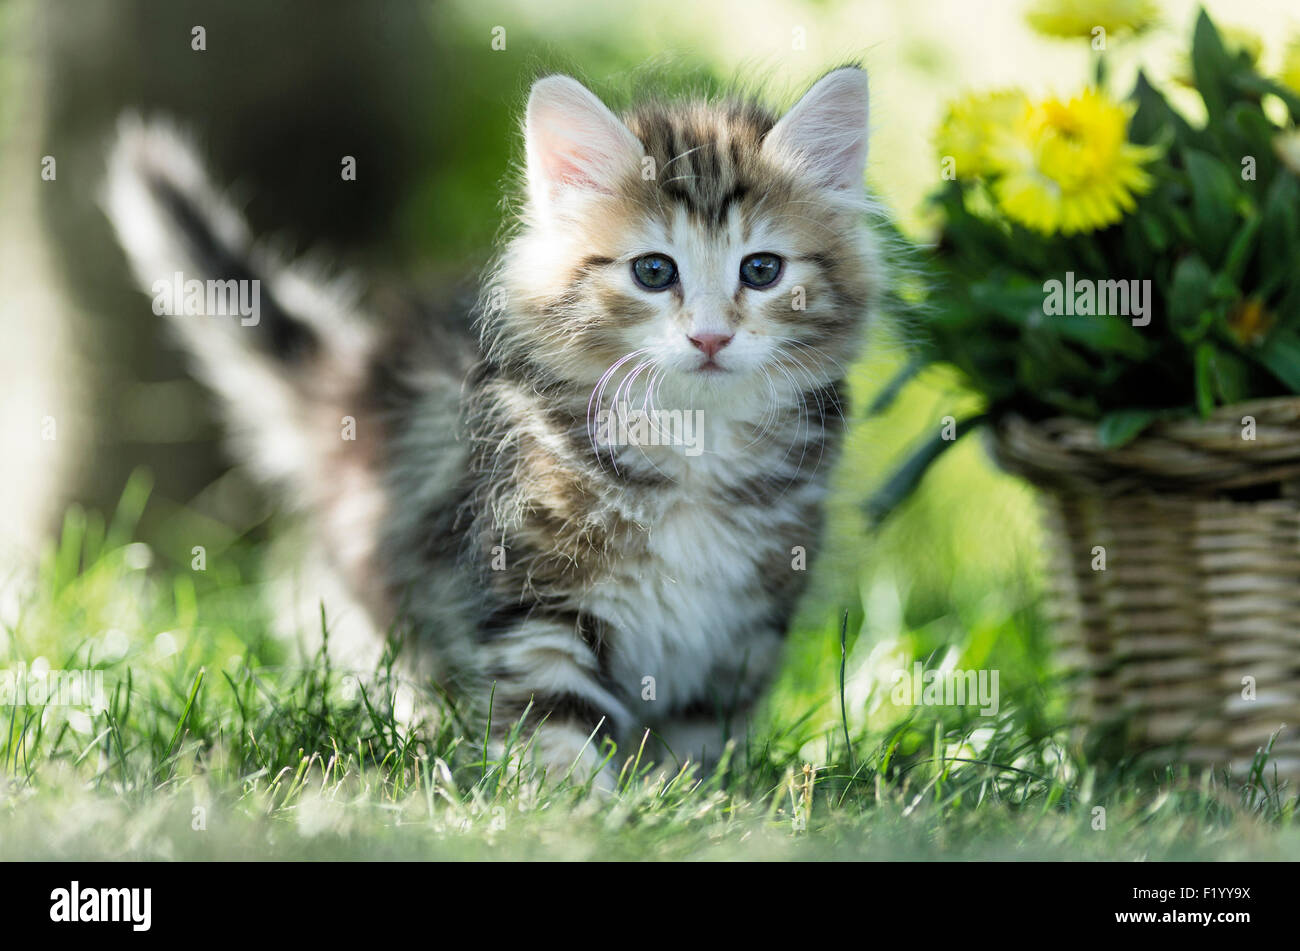 Norwegische Wald Katze Tabby Kitten zu Fuß Rasen neben Weidenkorb gelb Stroh Gänseblümchen Deutschland Stockfoto